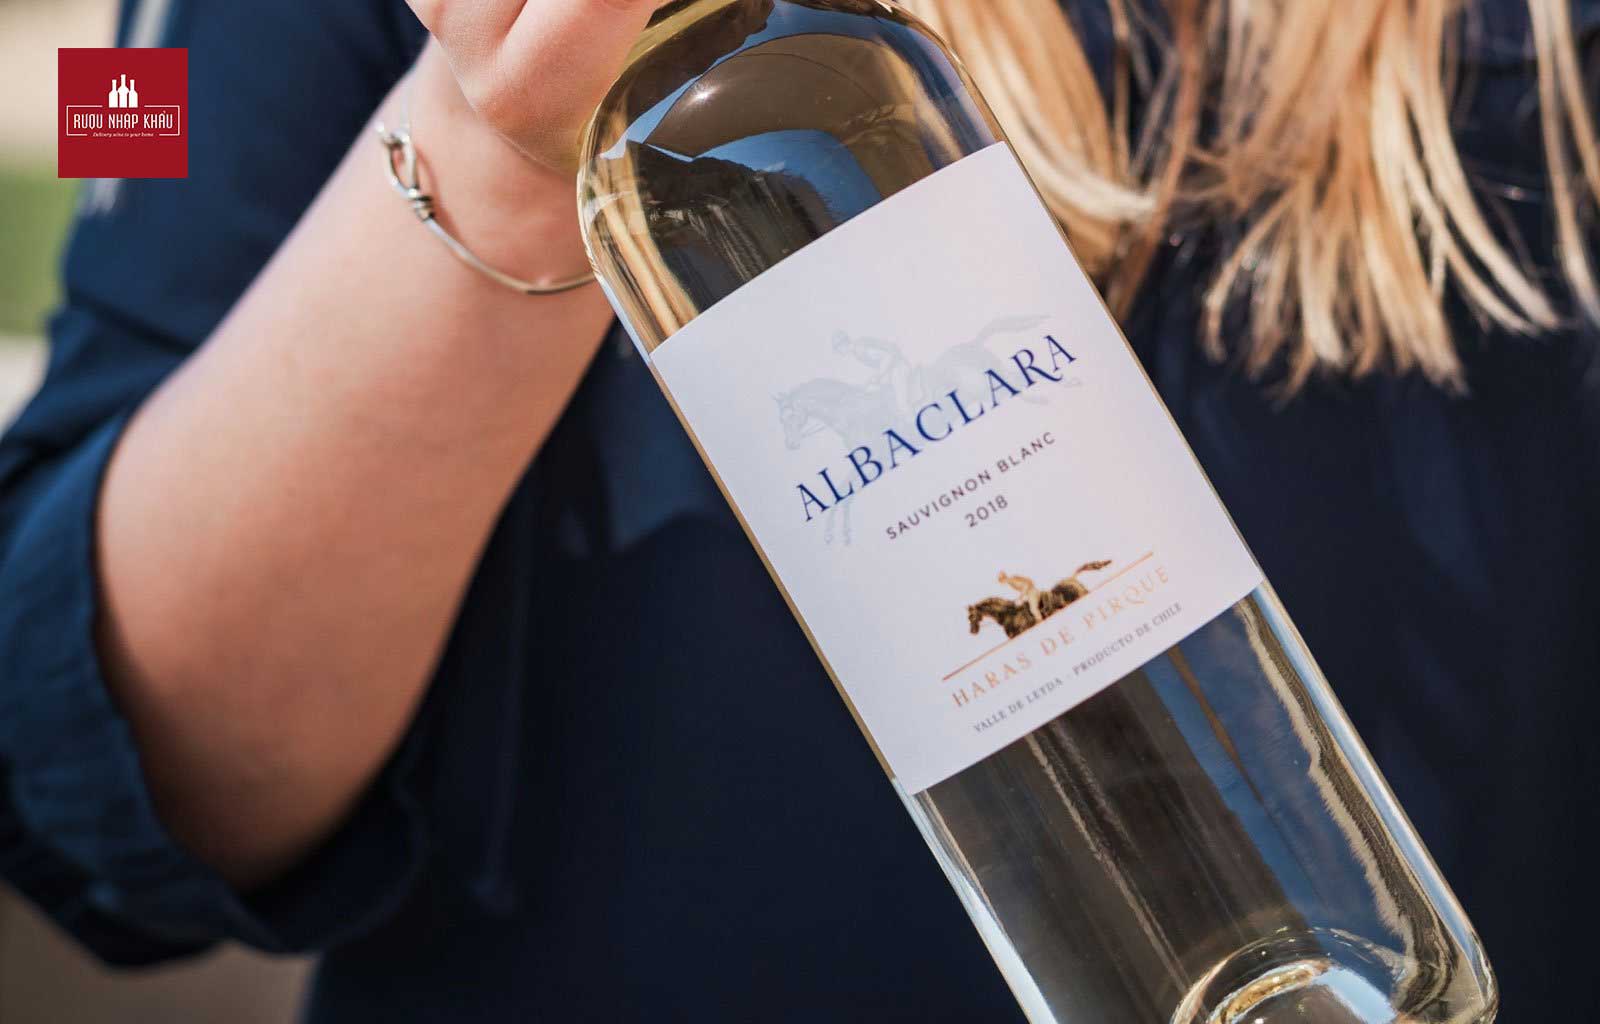 Gợi ý những chai rượu vang Sauvignon Blanc ngon giá tốt - Albaclara Sauvignon Blanc 2018